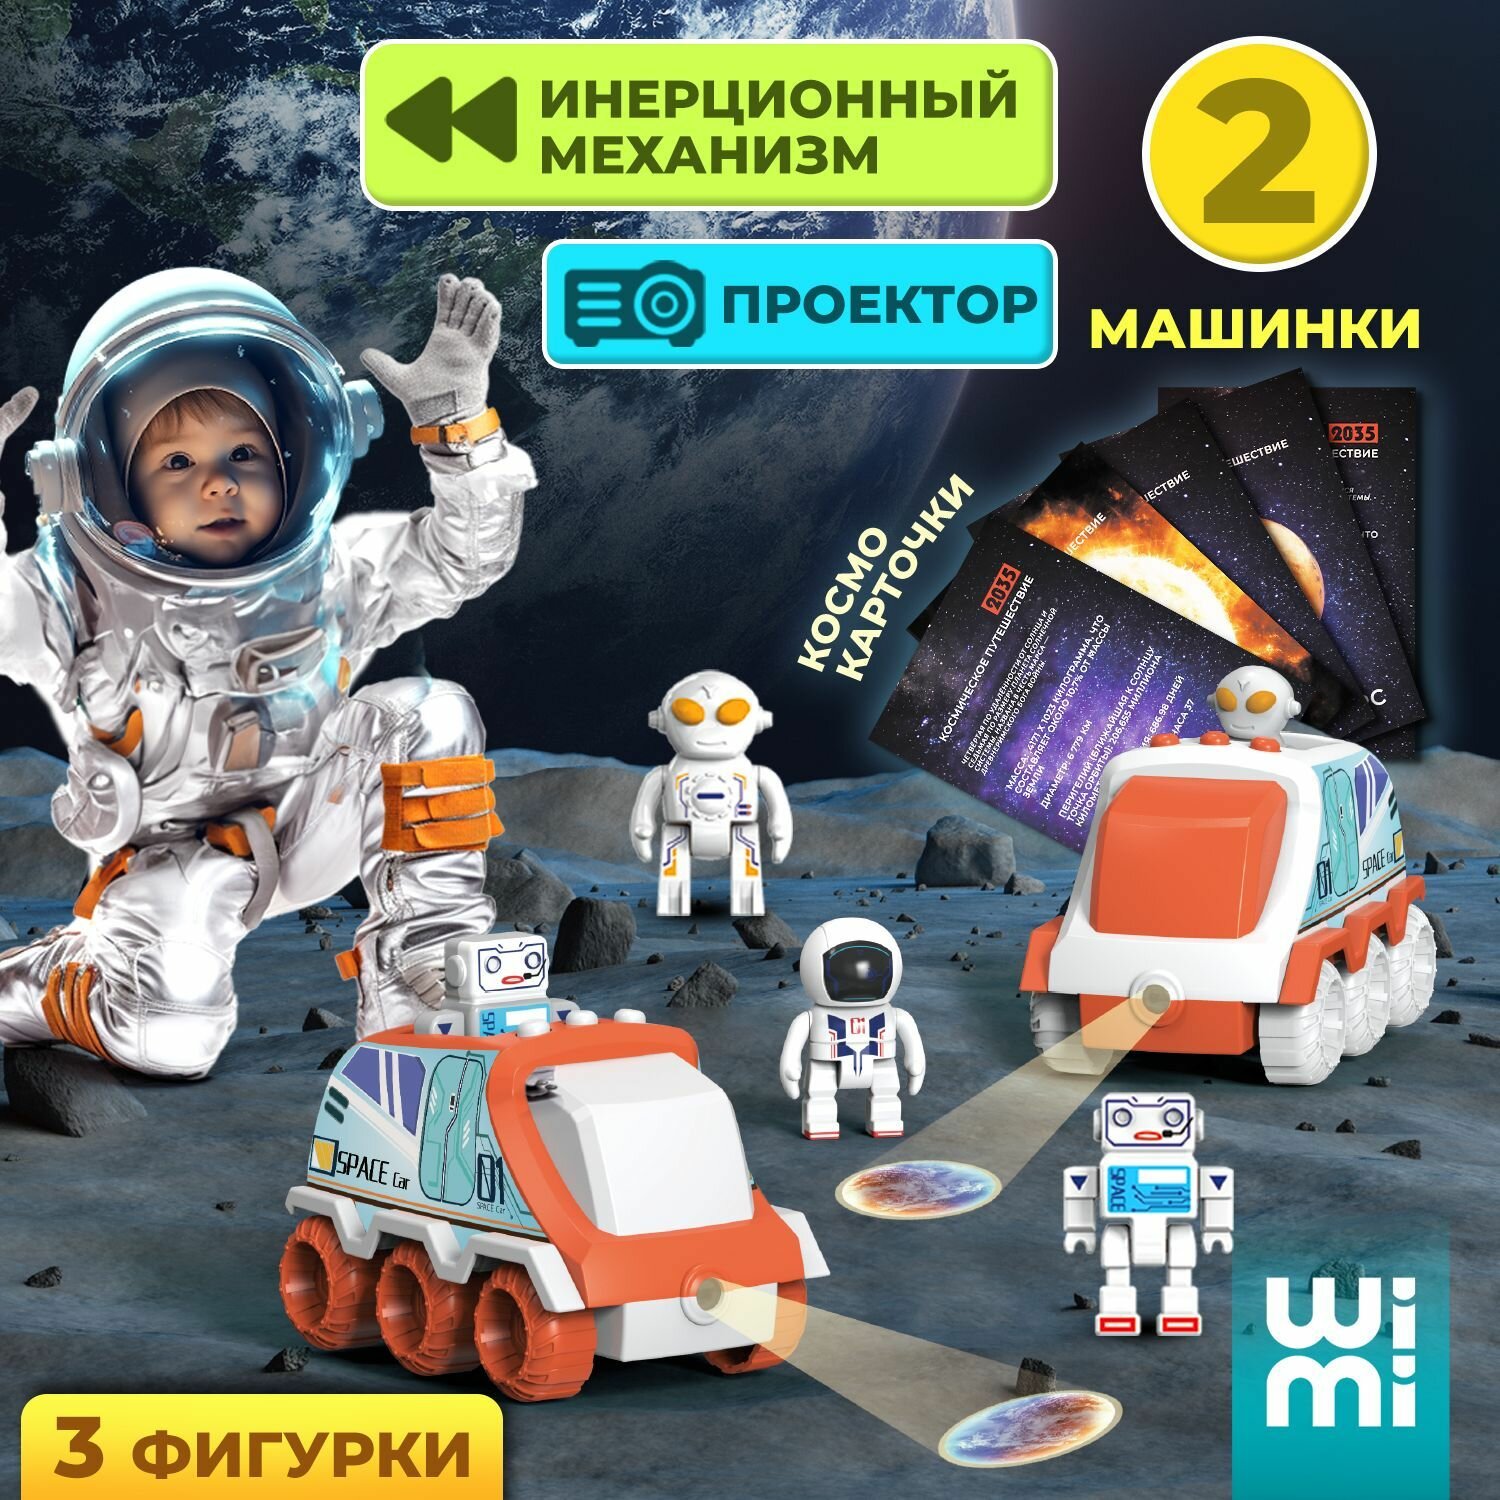 Космический набор WiMi с луноходами и фигурками космонавтов, детский игровой набор с карточками планет и планетоходом